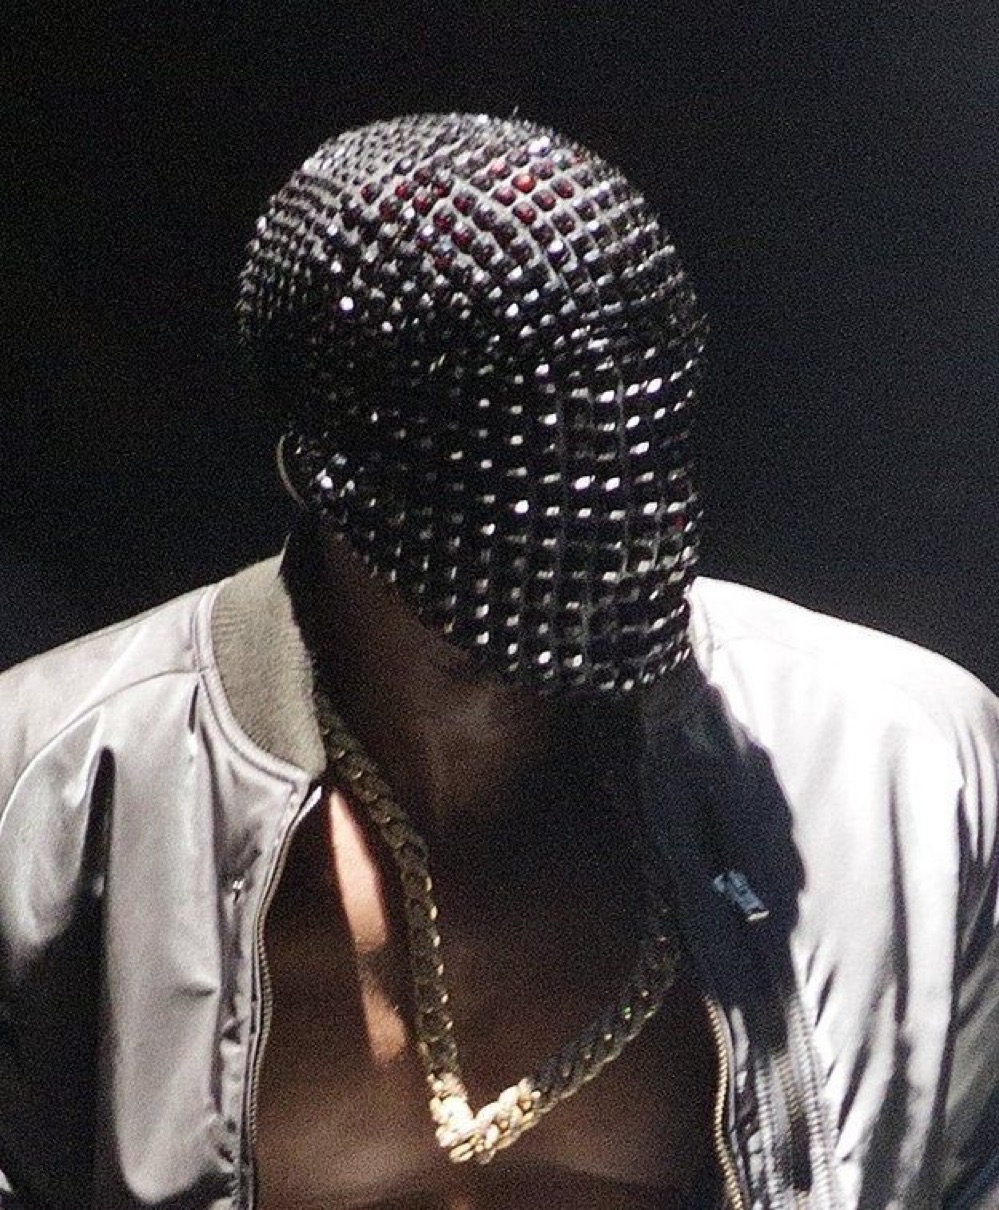 Kanye Westがサージカルマスクの商標として『Ye』を申請か | UP TO DATE